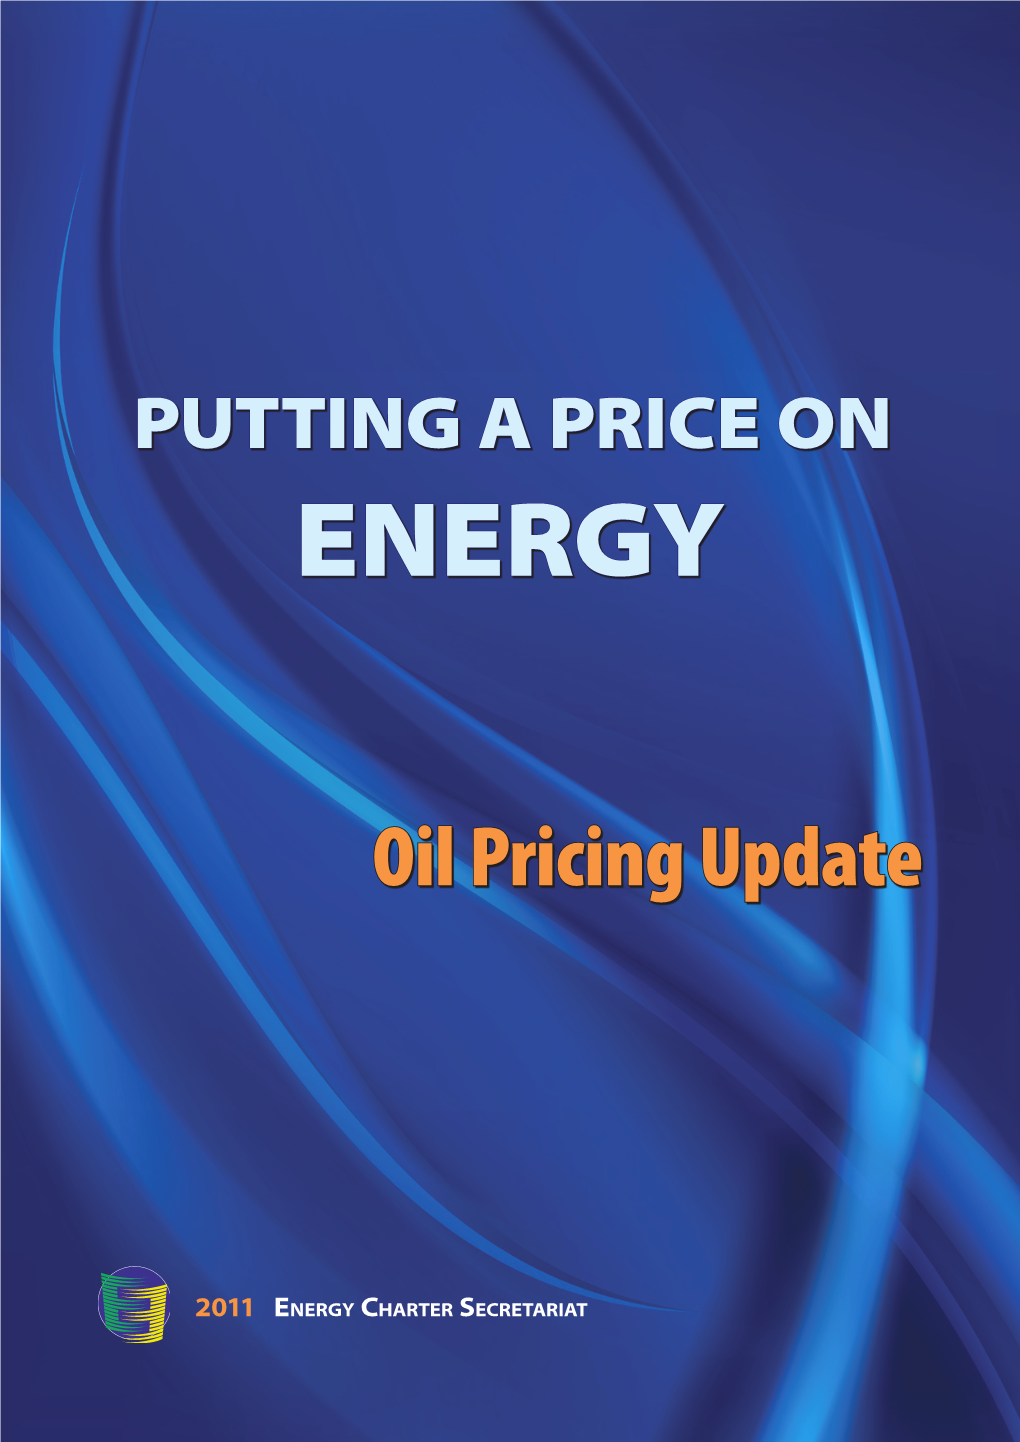 Oil Pricing Update